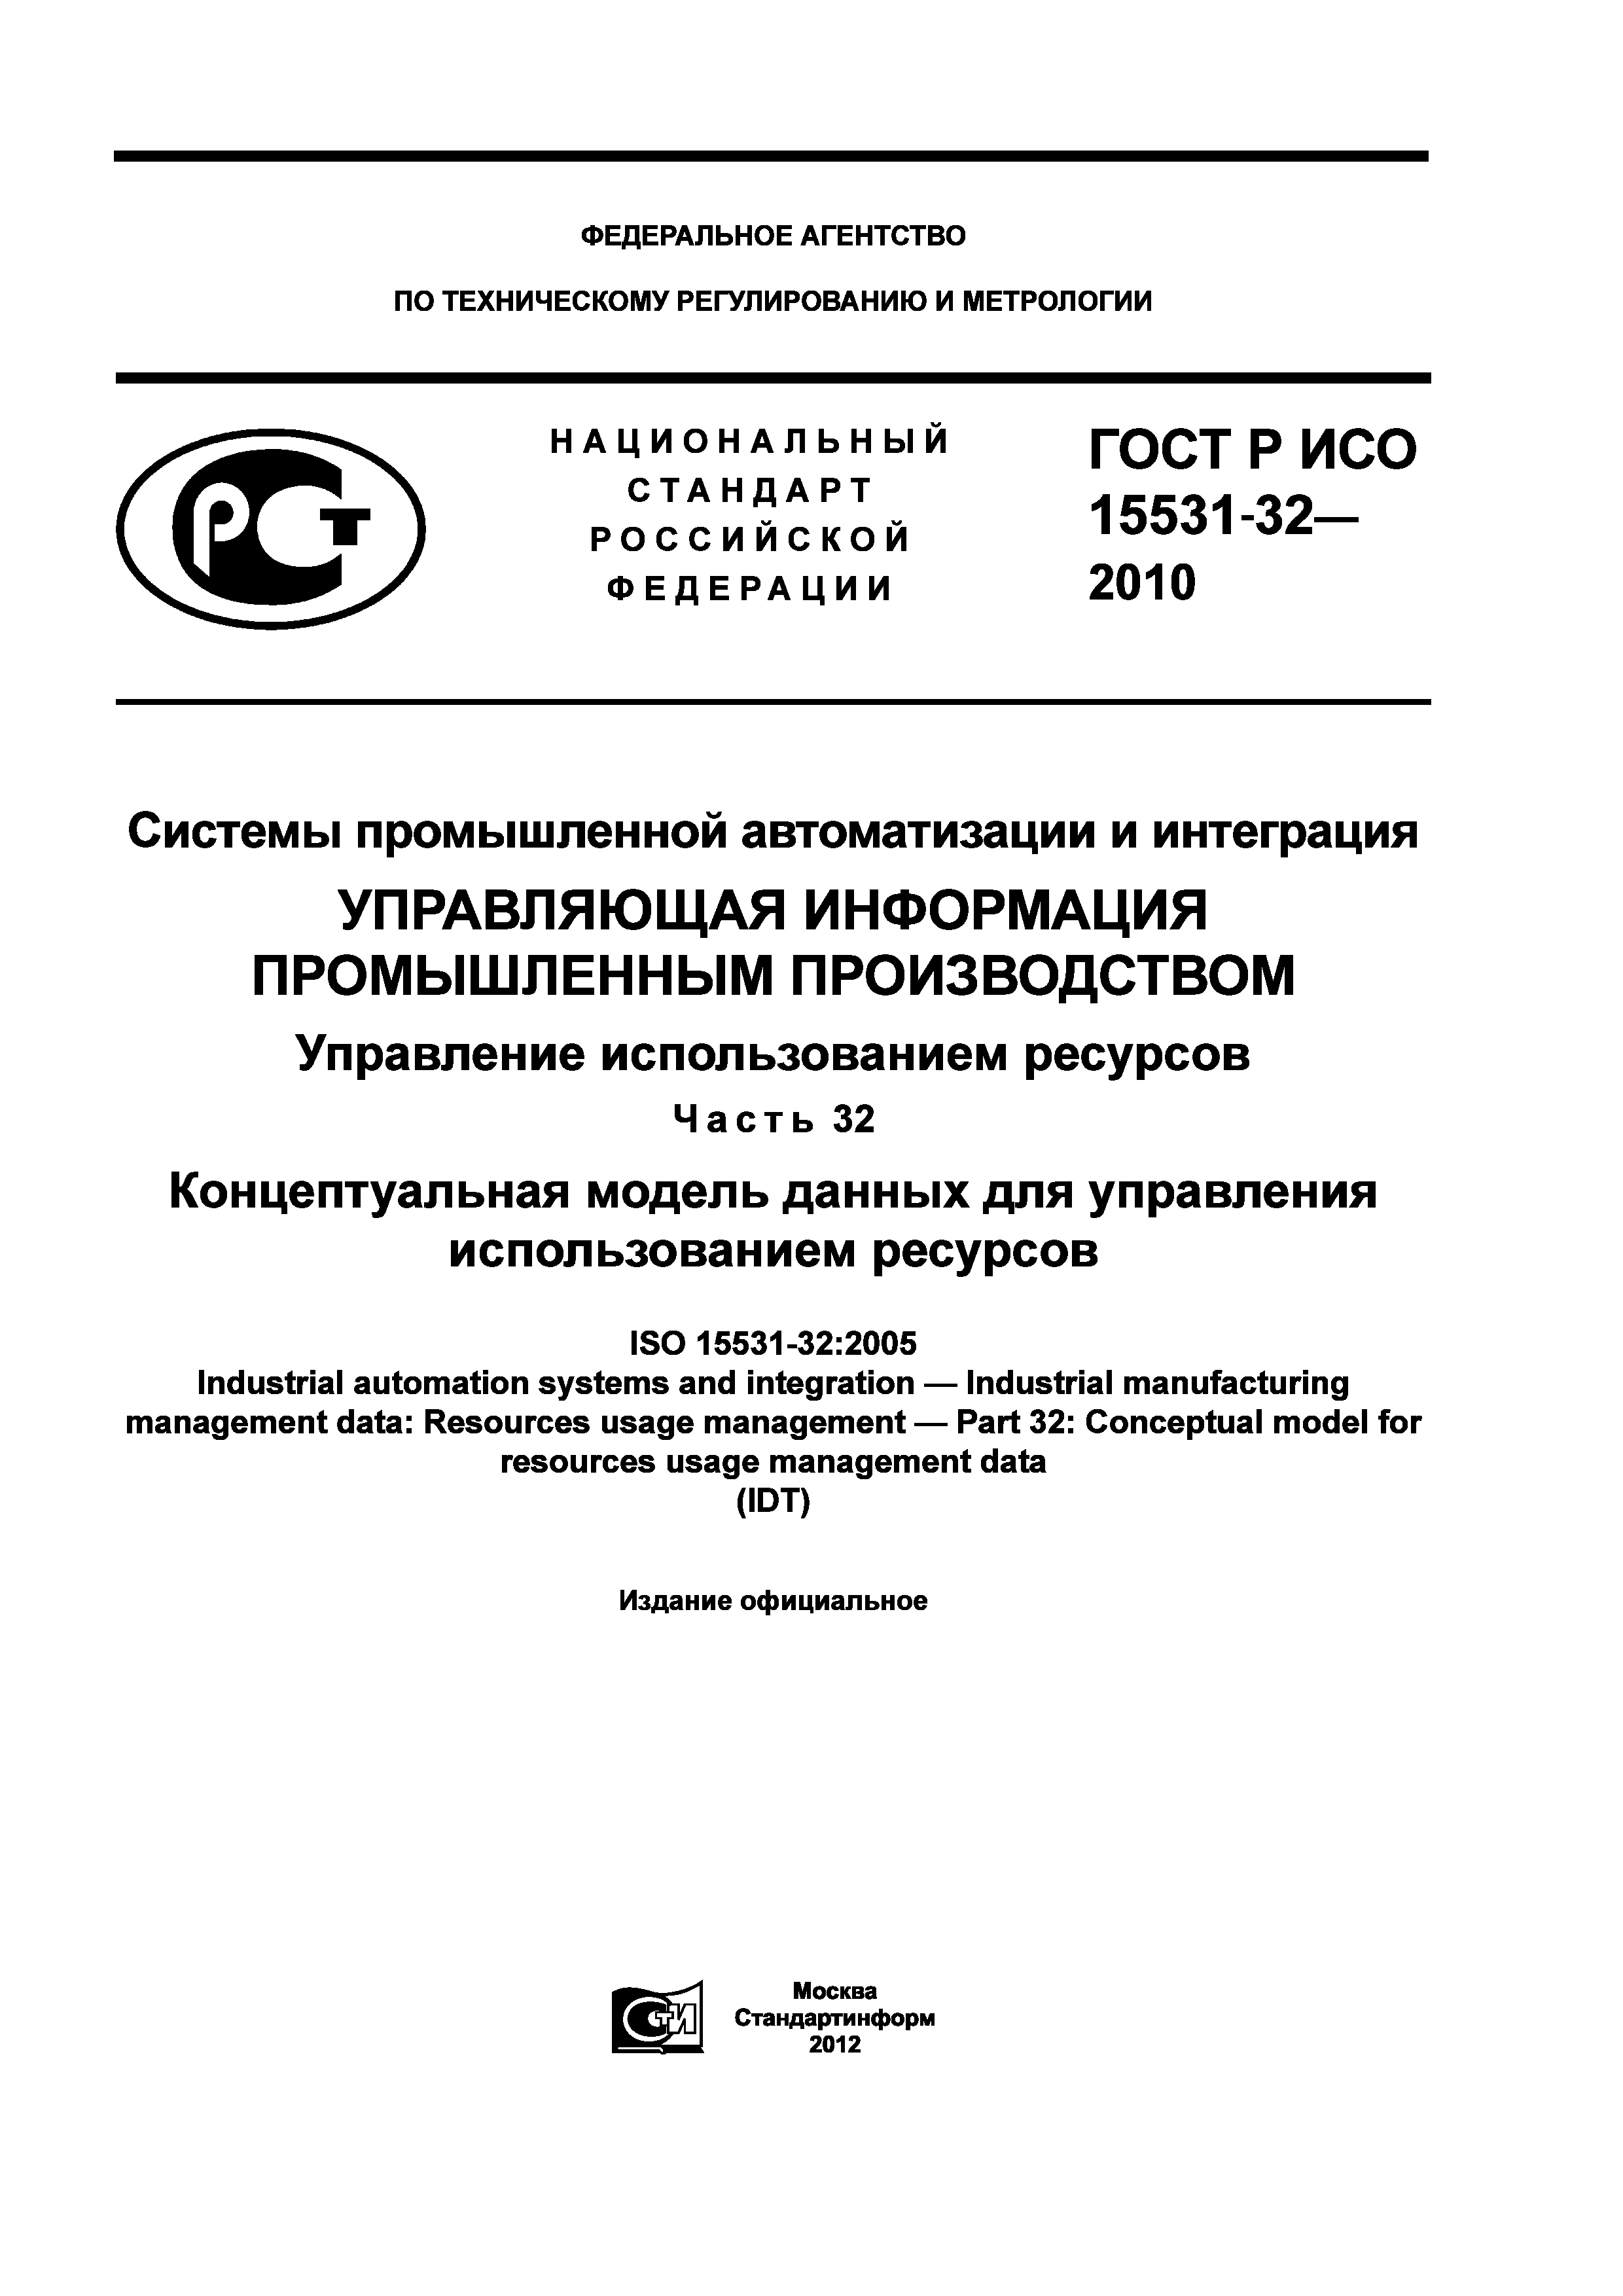 ГОСТ Р ИСО 15531-32-2010